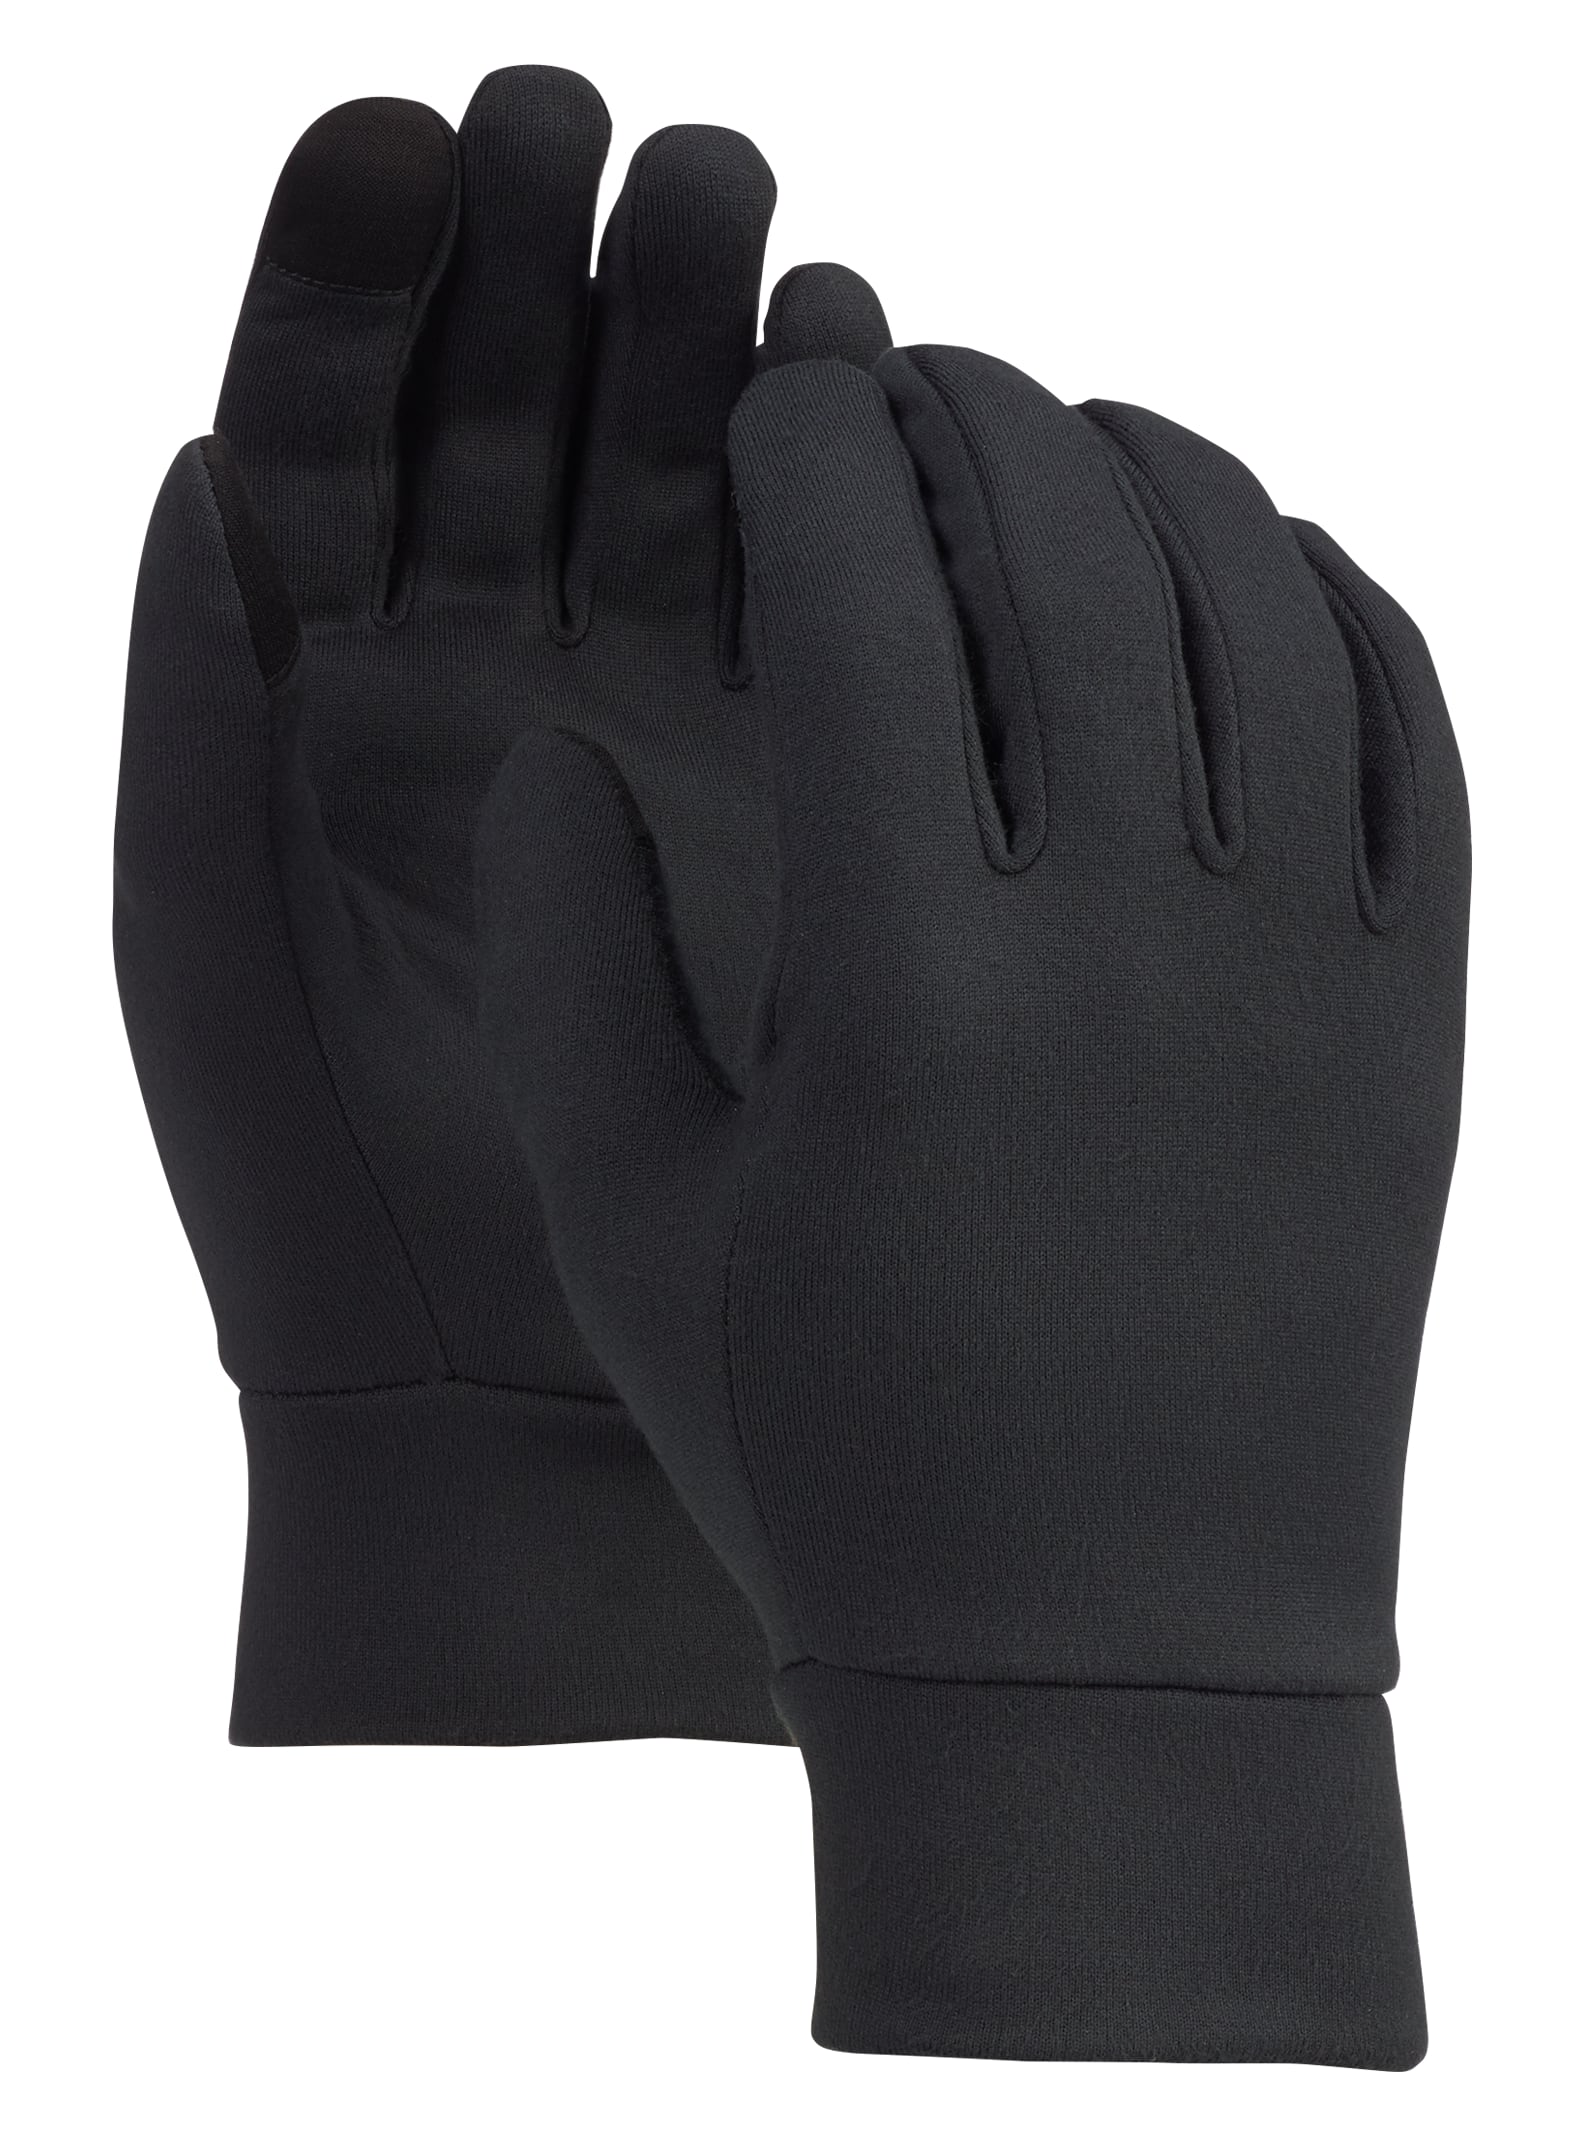 BURTON Mens 2020 Snowboard Snow Black Gore-tex Under Gloves 